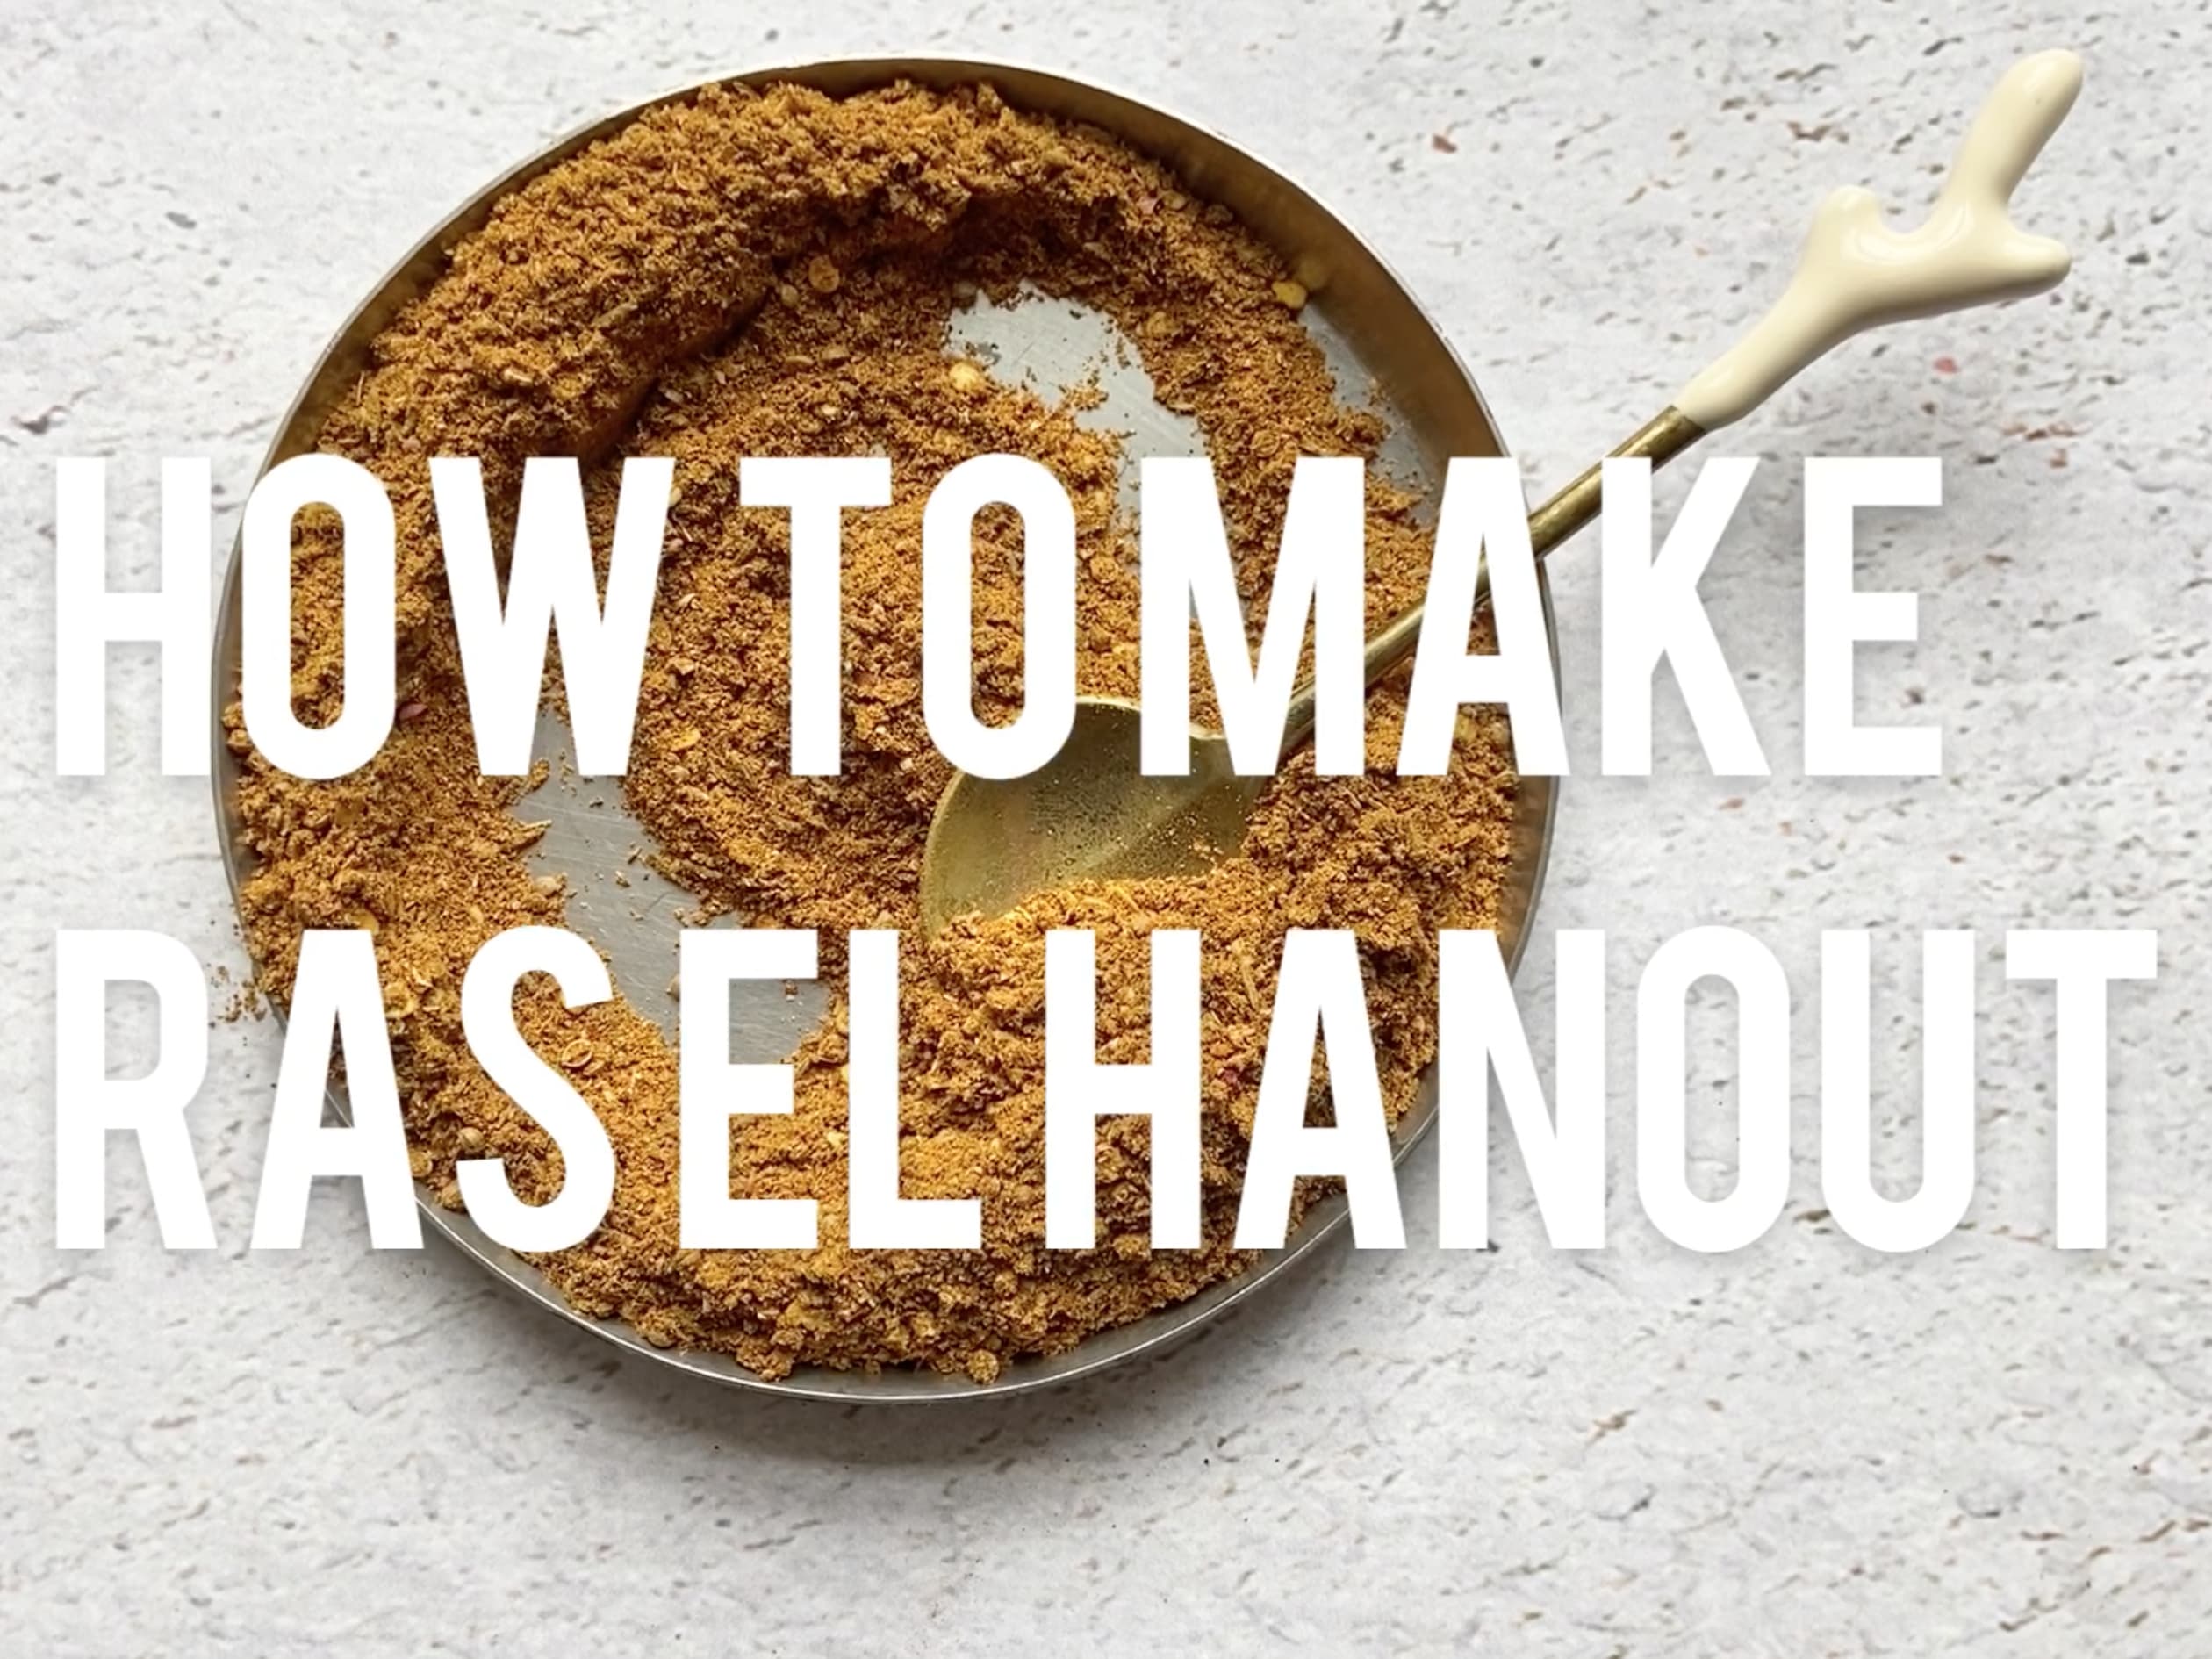 Ras el Hanout Recipe - This Healthy Table